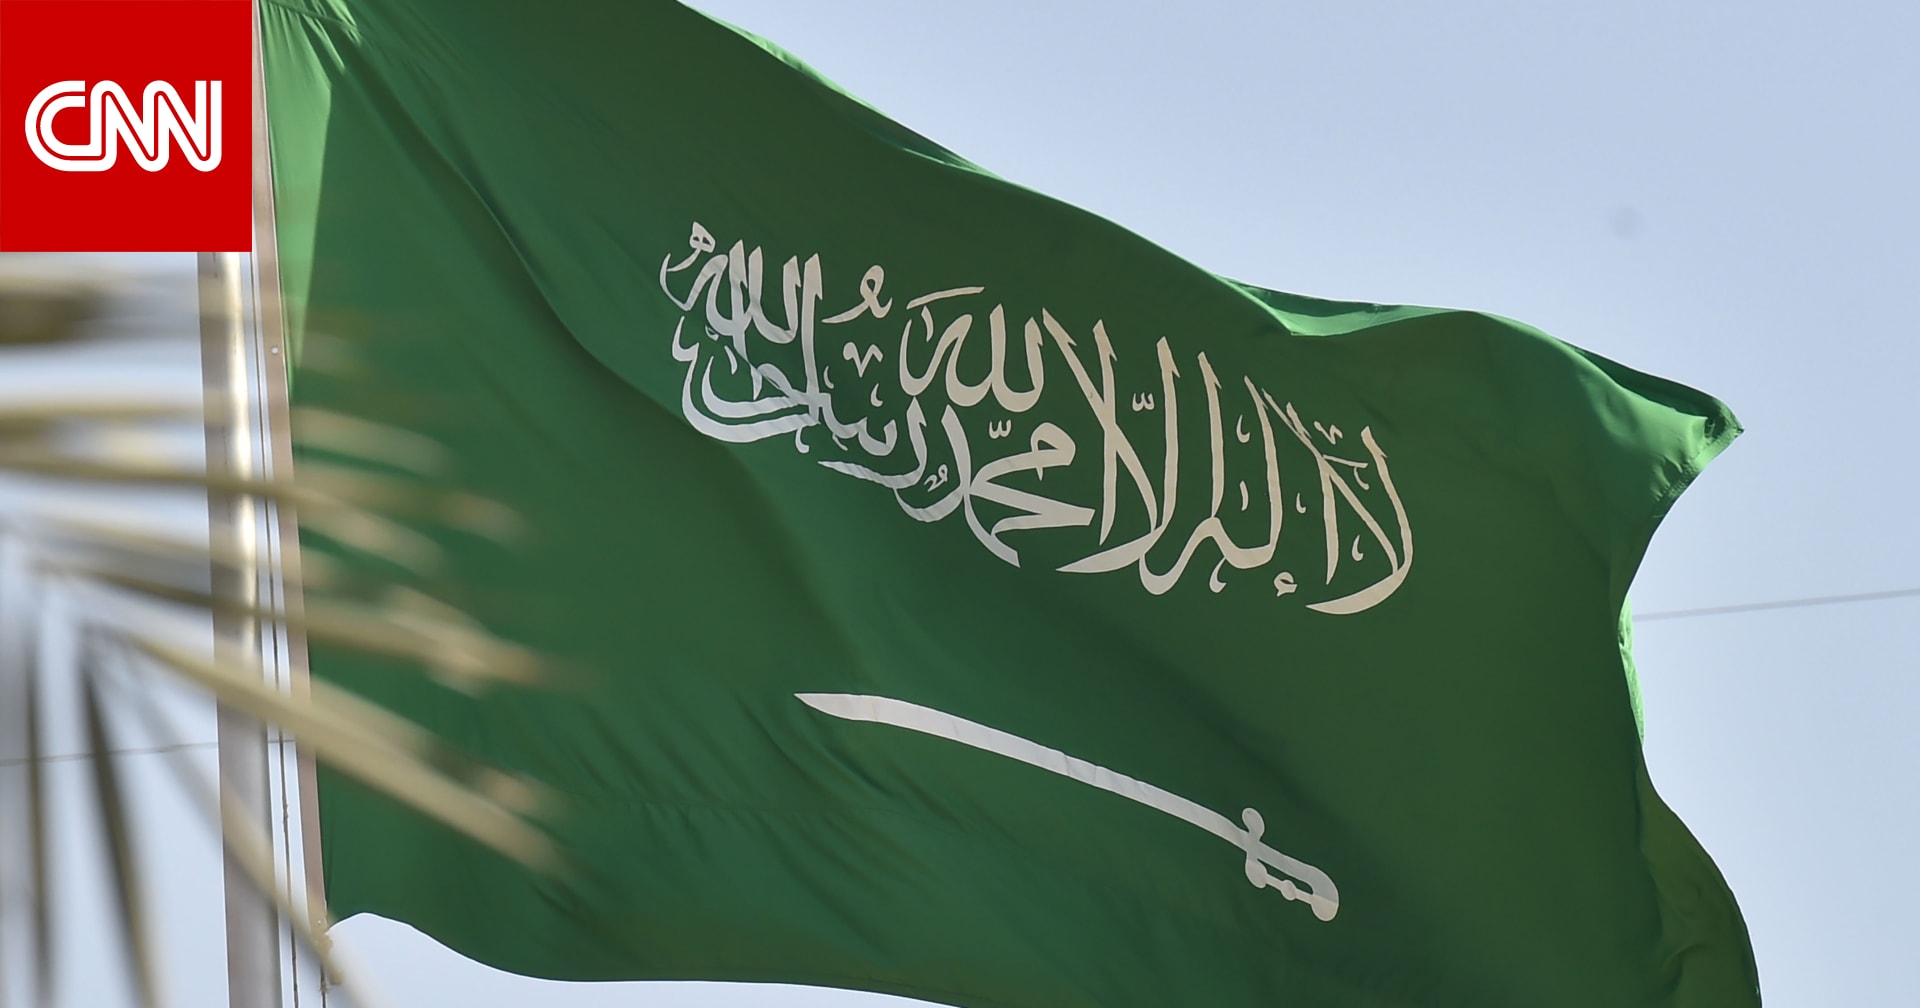 السعودية تسجل تراجعاً طفيفاً في معدل البطالة في الربع الثاني